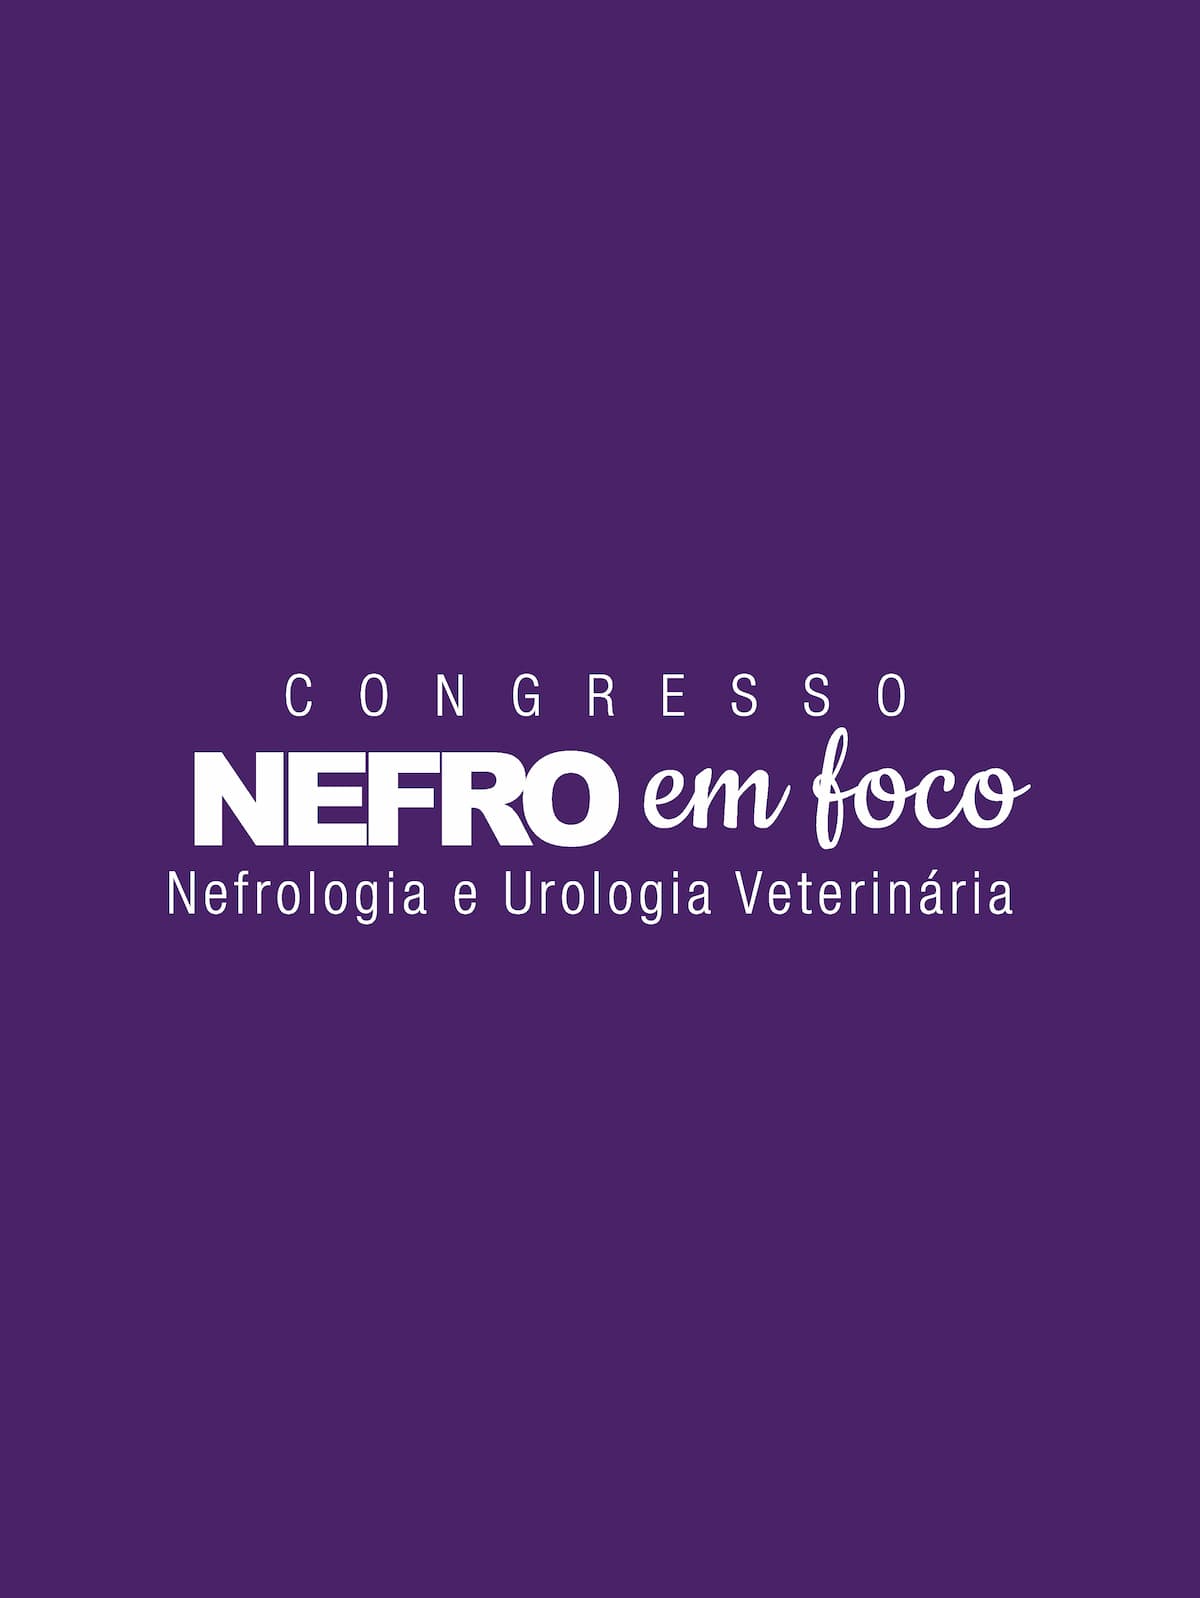 Congresso Nefro em Foco Veterinários dia 25/04/24